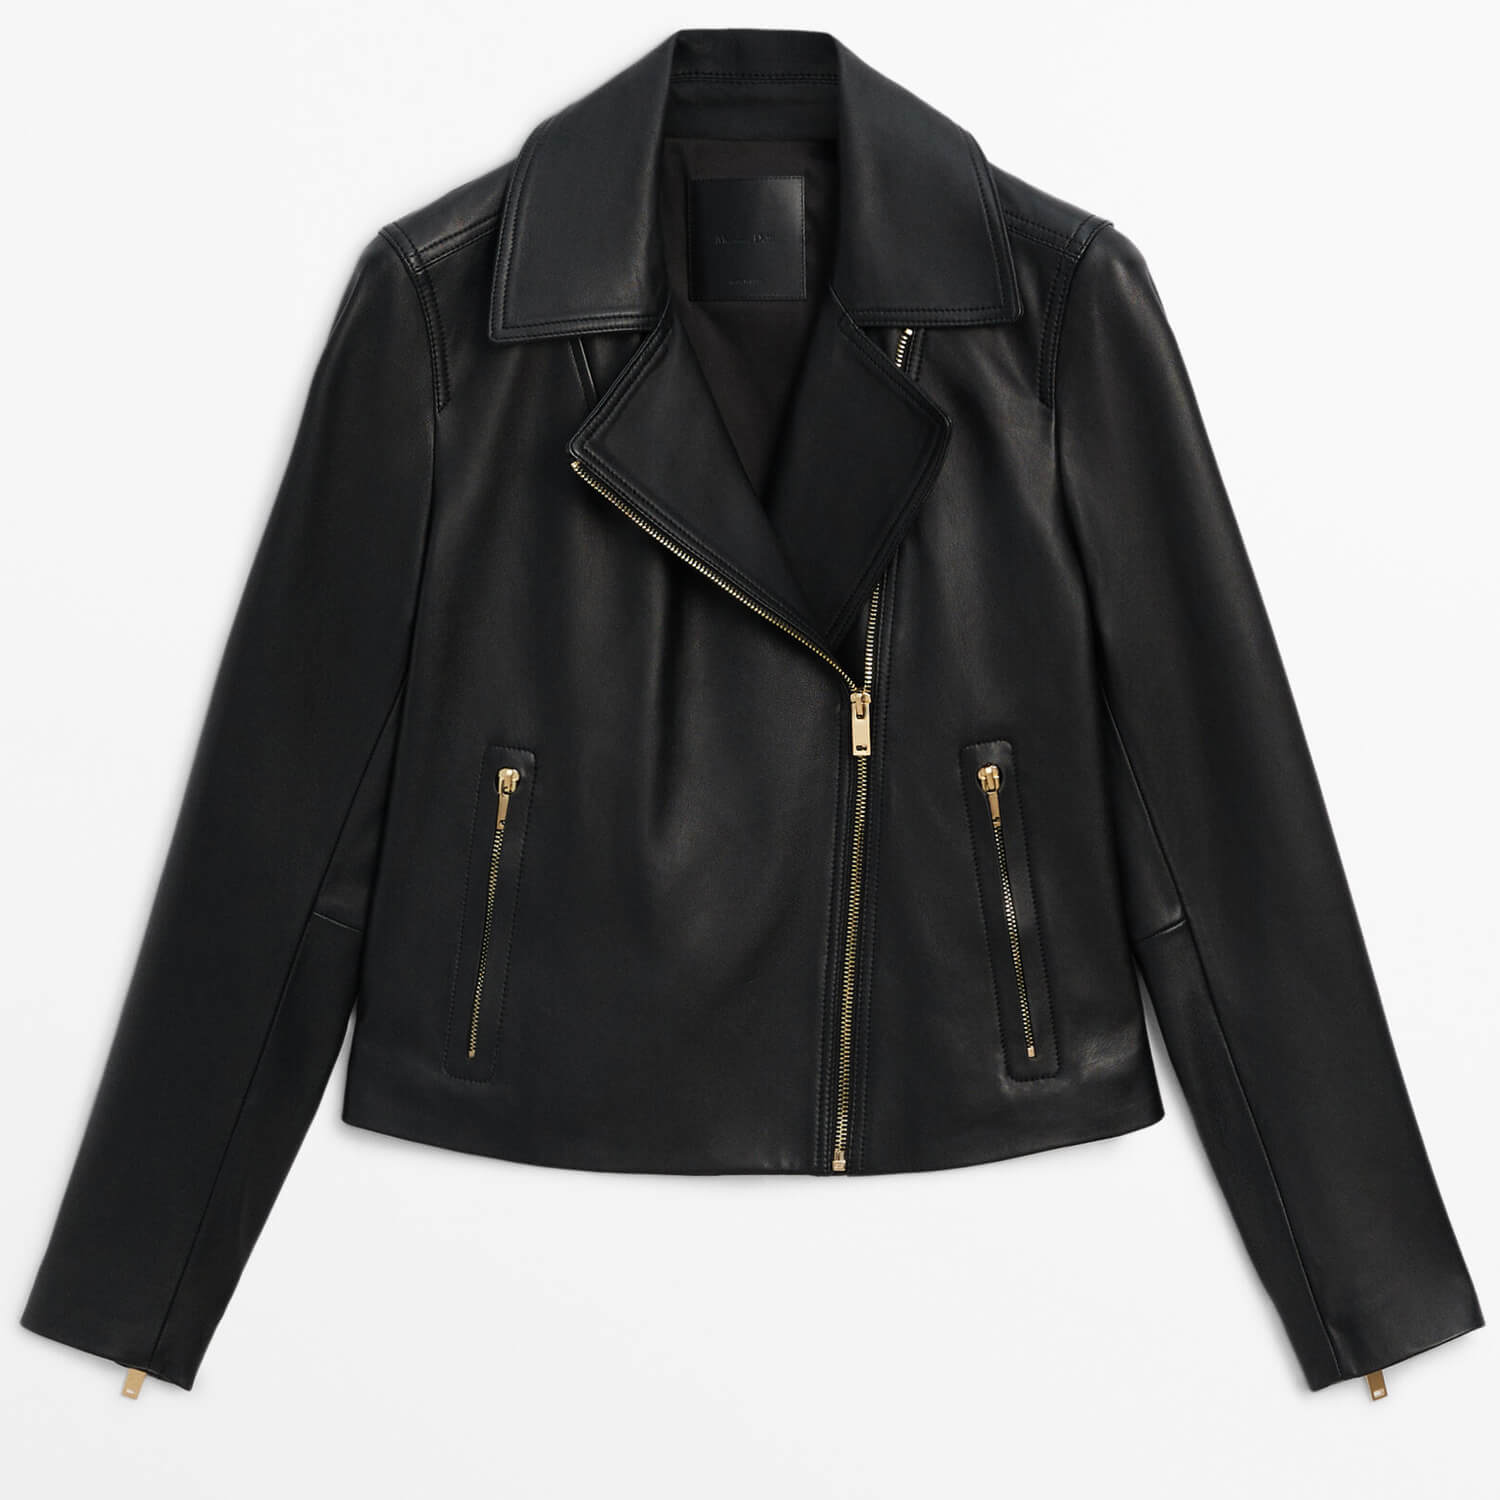 Куртка Massimo Dutti Nappa Leather Biker, черный женская байкерская куртка из натуральной овечьей кожи черная шерстяная байкерская кожаная куртка кожаные товары бесплатная доставка